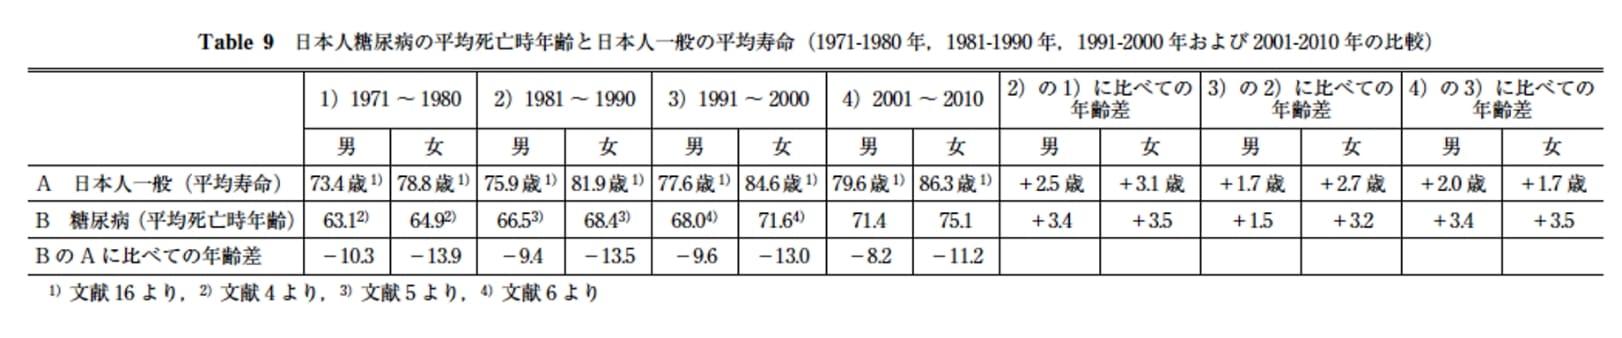 日本人糖尿病の平均死亡時の年齢と日本人一般の平均寿命